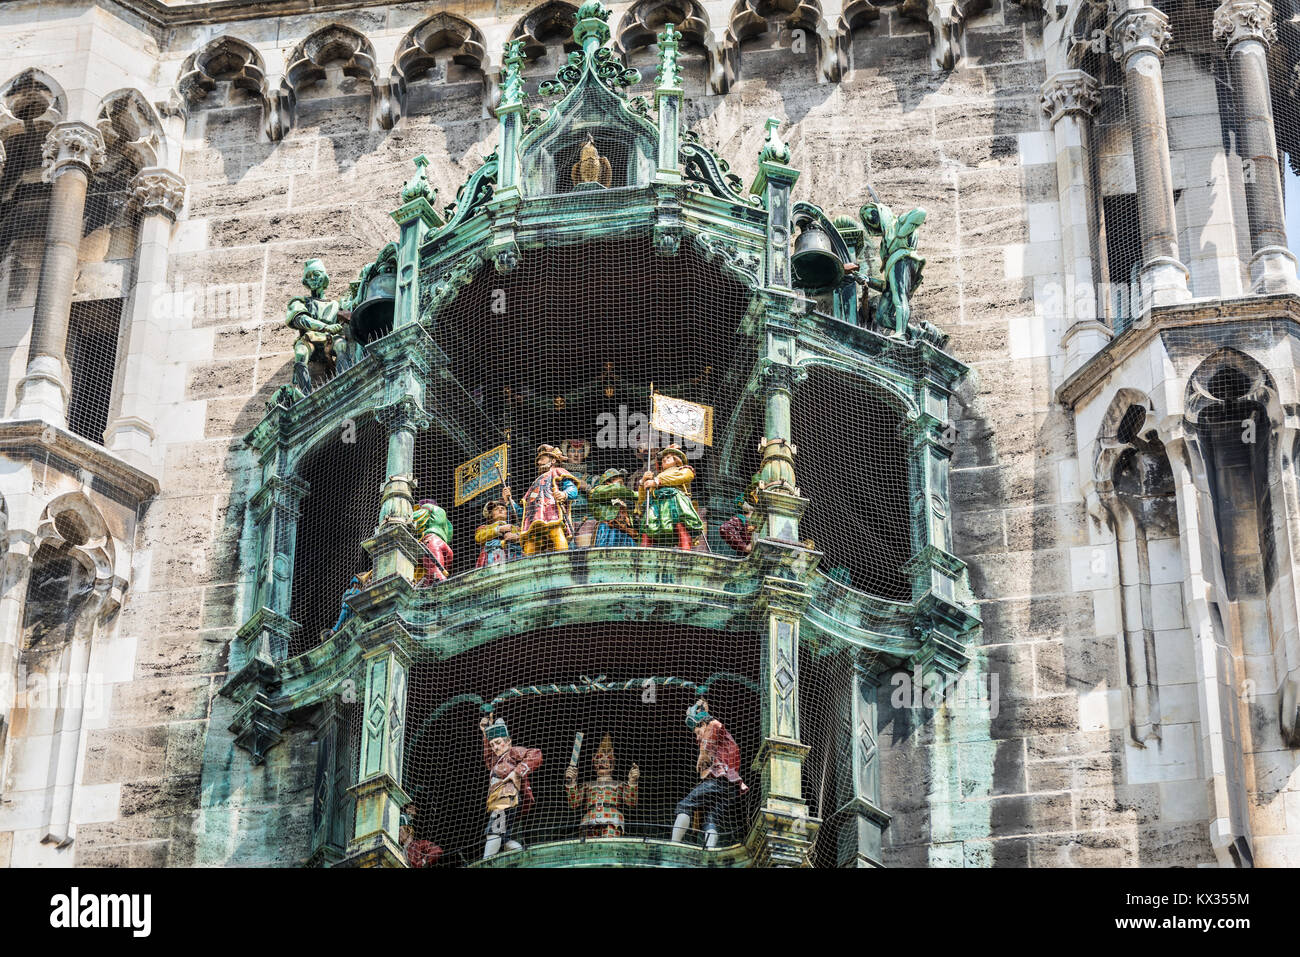 Monaco di Baviera, Germania - 29 Maggio 2016: figure danzanti sulla torre del Marienplatz Municipio nuovo nella famosa Place Square nella città europea Monaco di Baviera, Germania Foto Stock